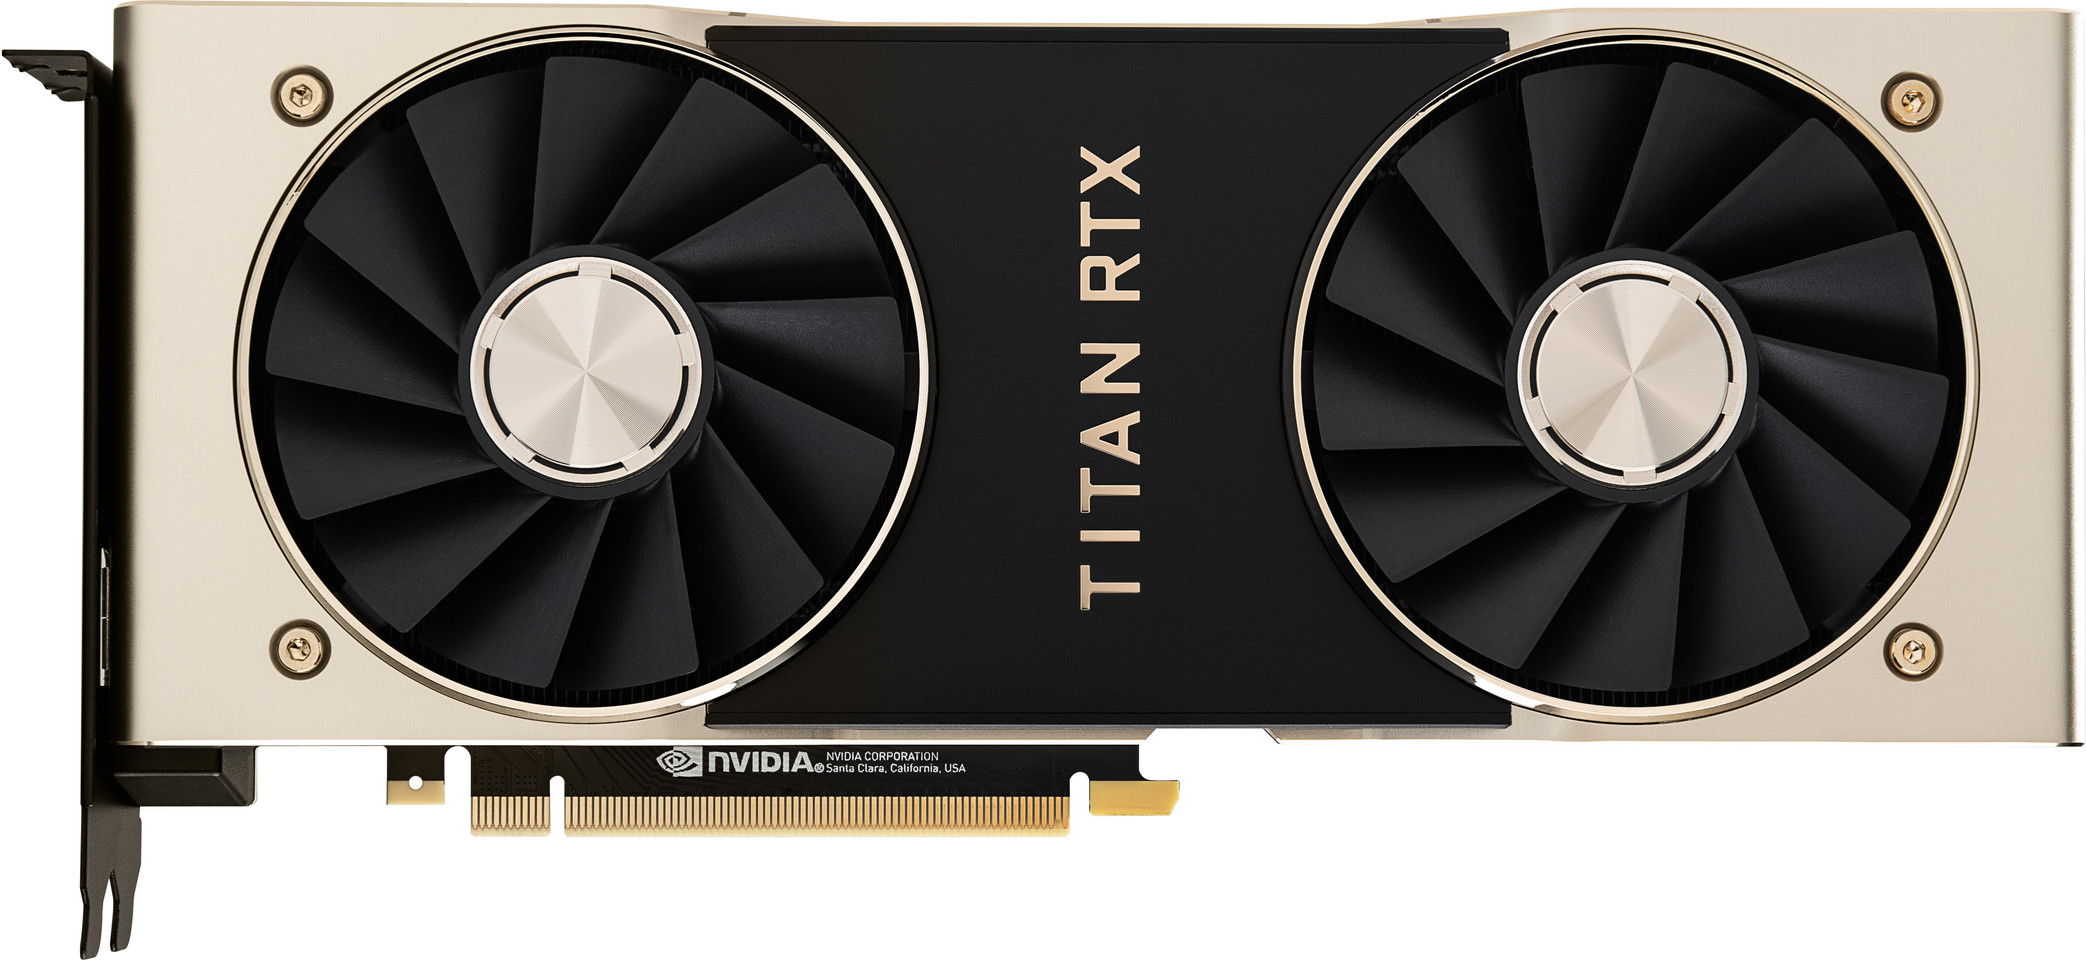 Nvidia Titan RTX duyuruldu: İşte özellikleri ve fiyatı